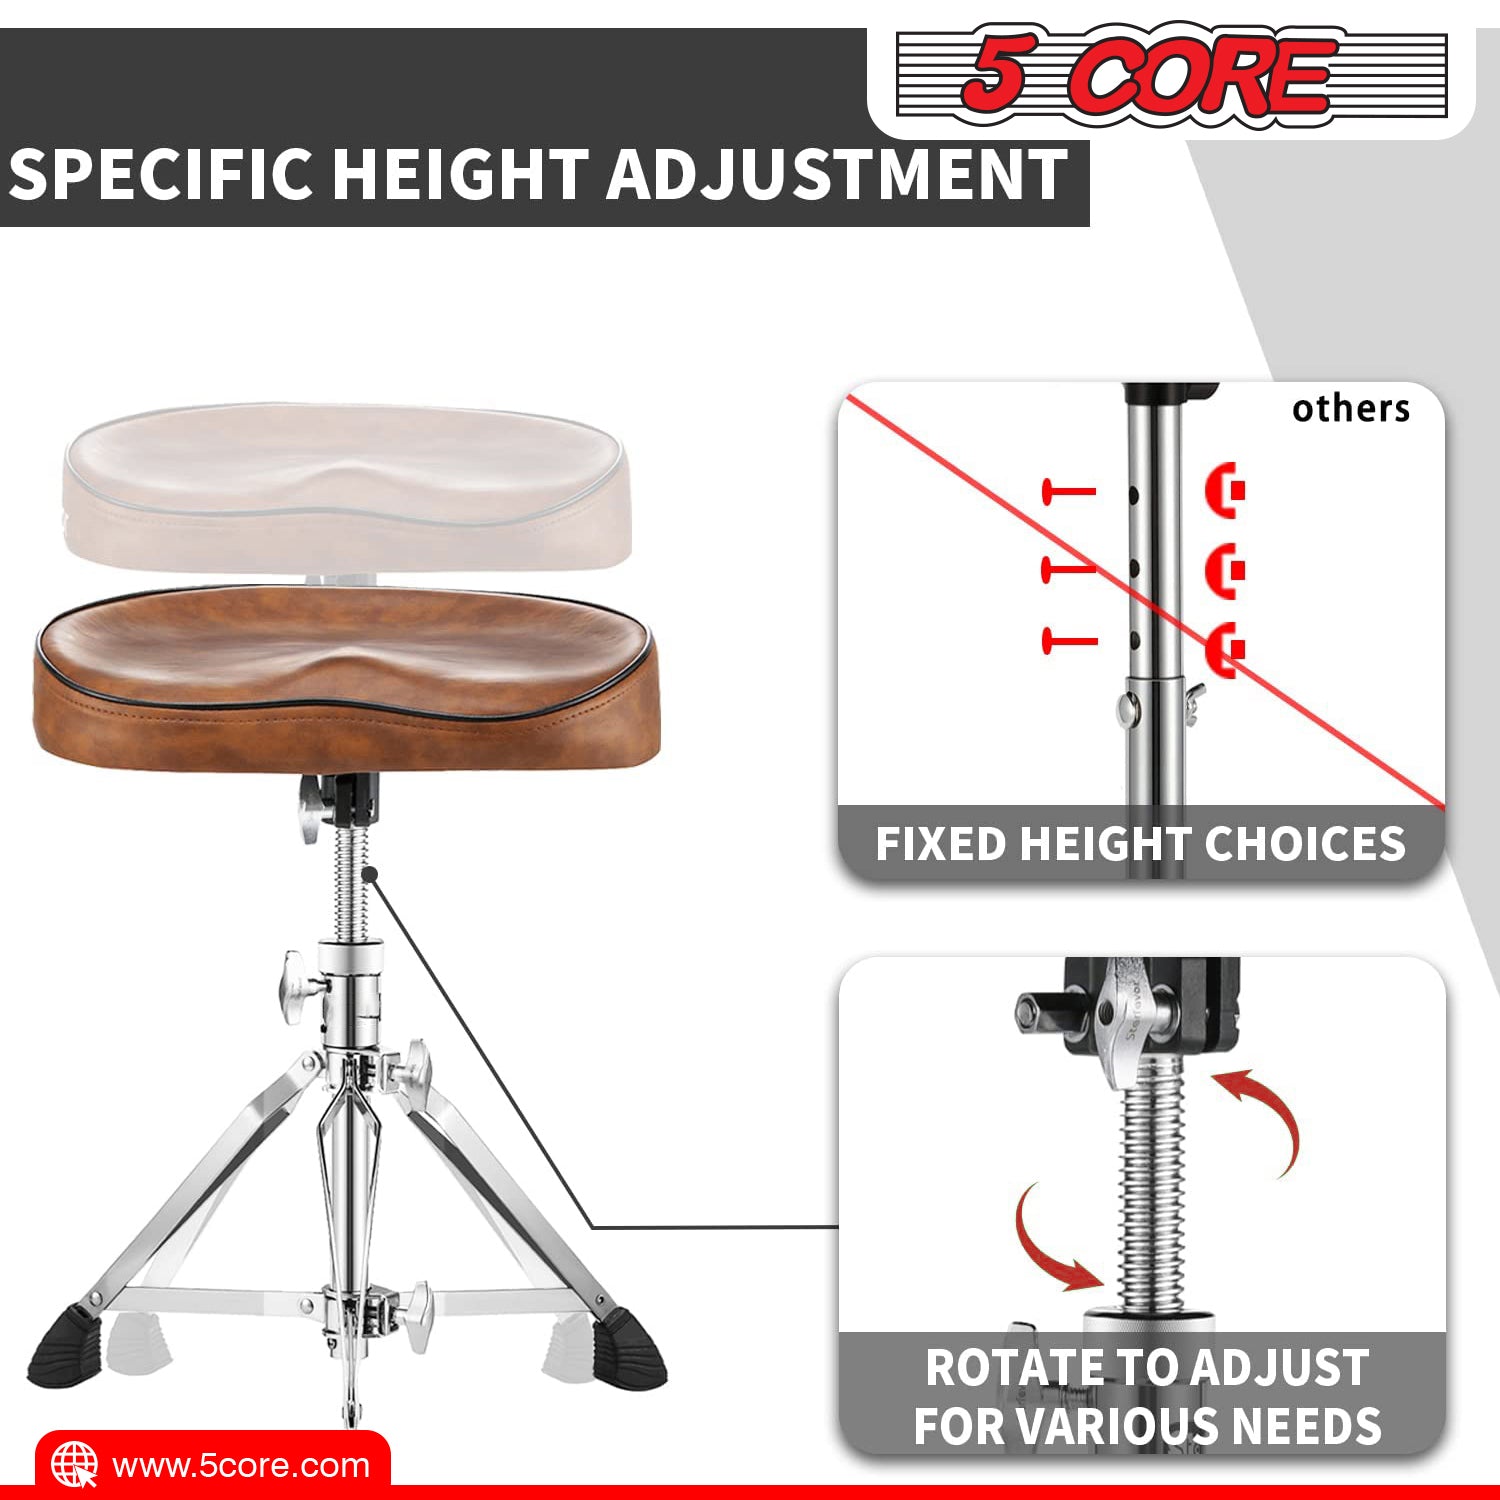 5 Core Ergonomic Drum Throne: Height adjustable padded seat for maximum comfort.